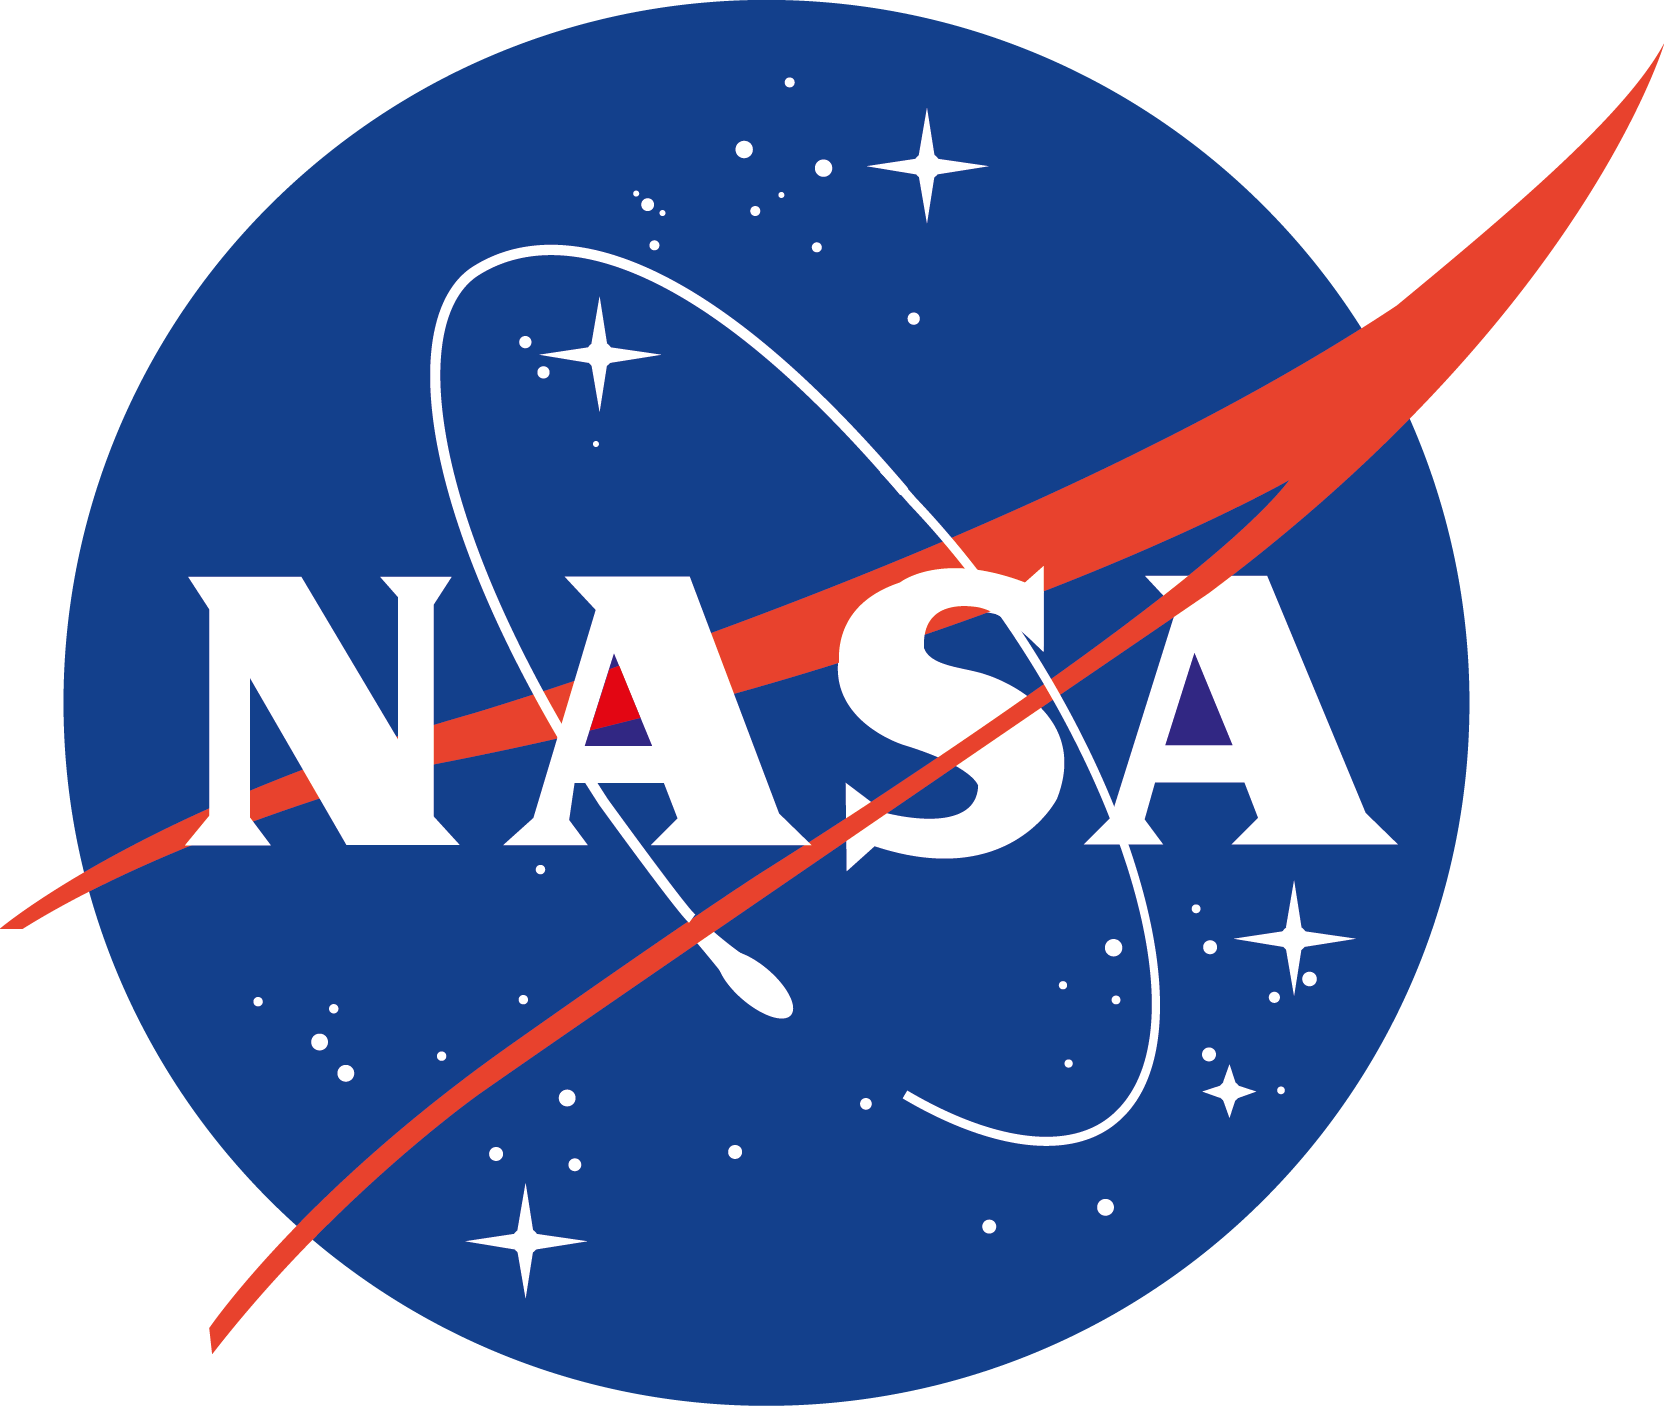 NASA PNG High Quality Image